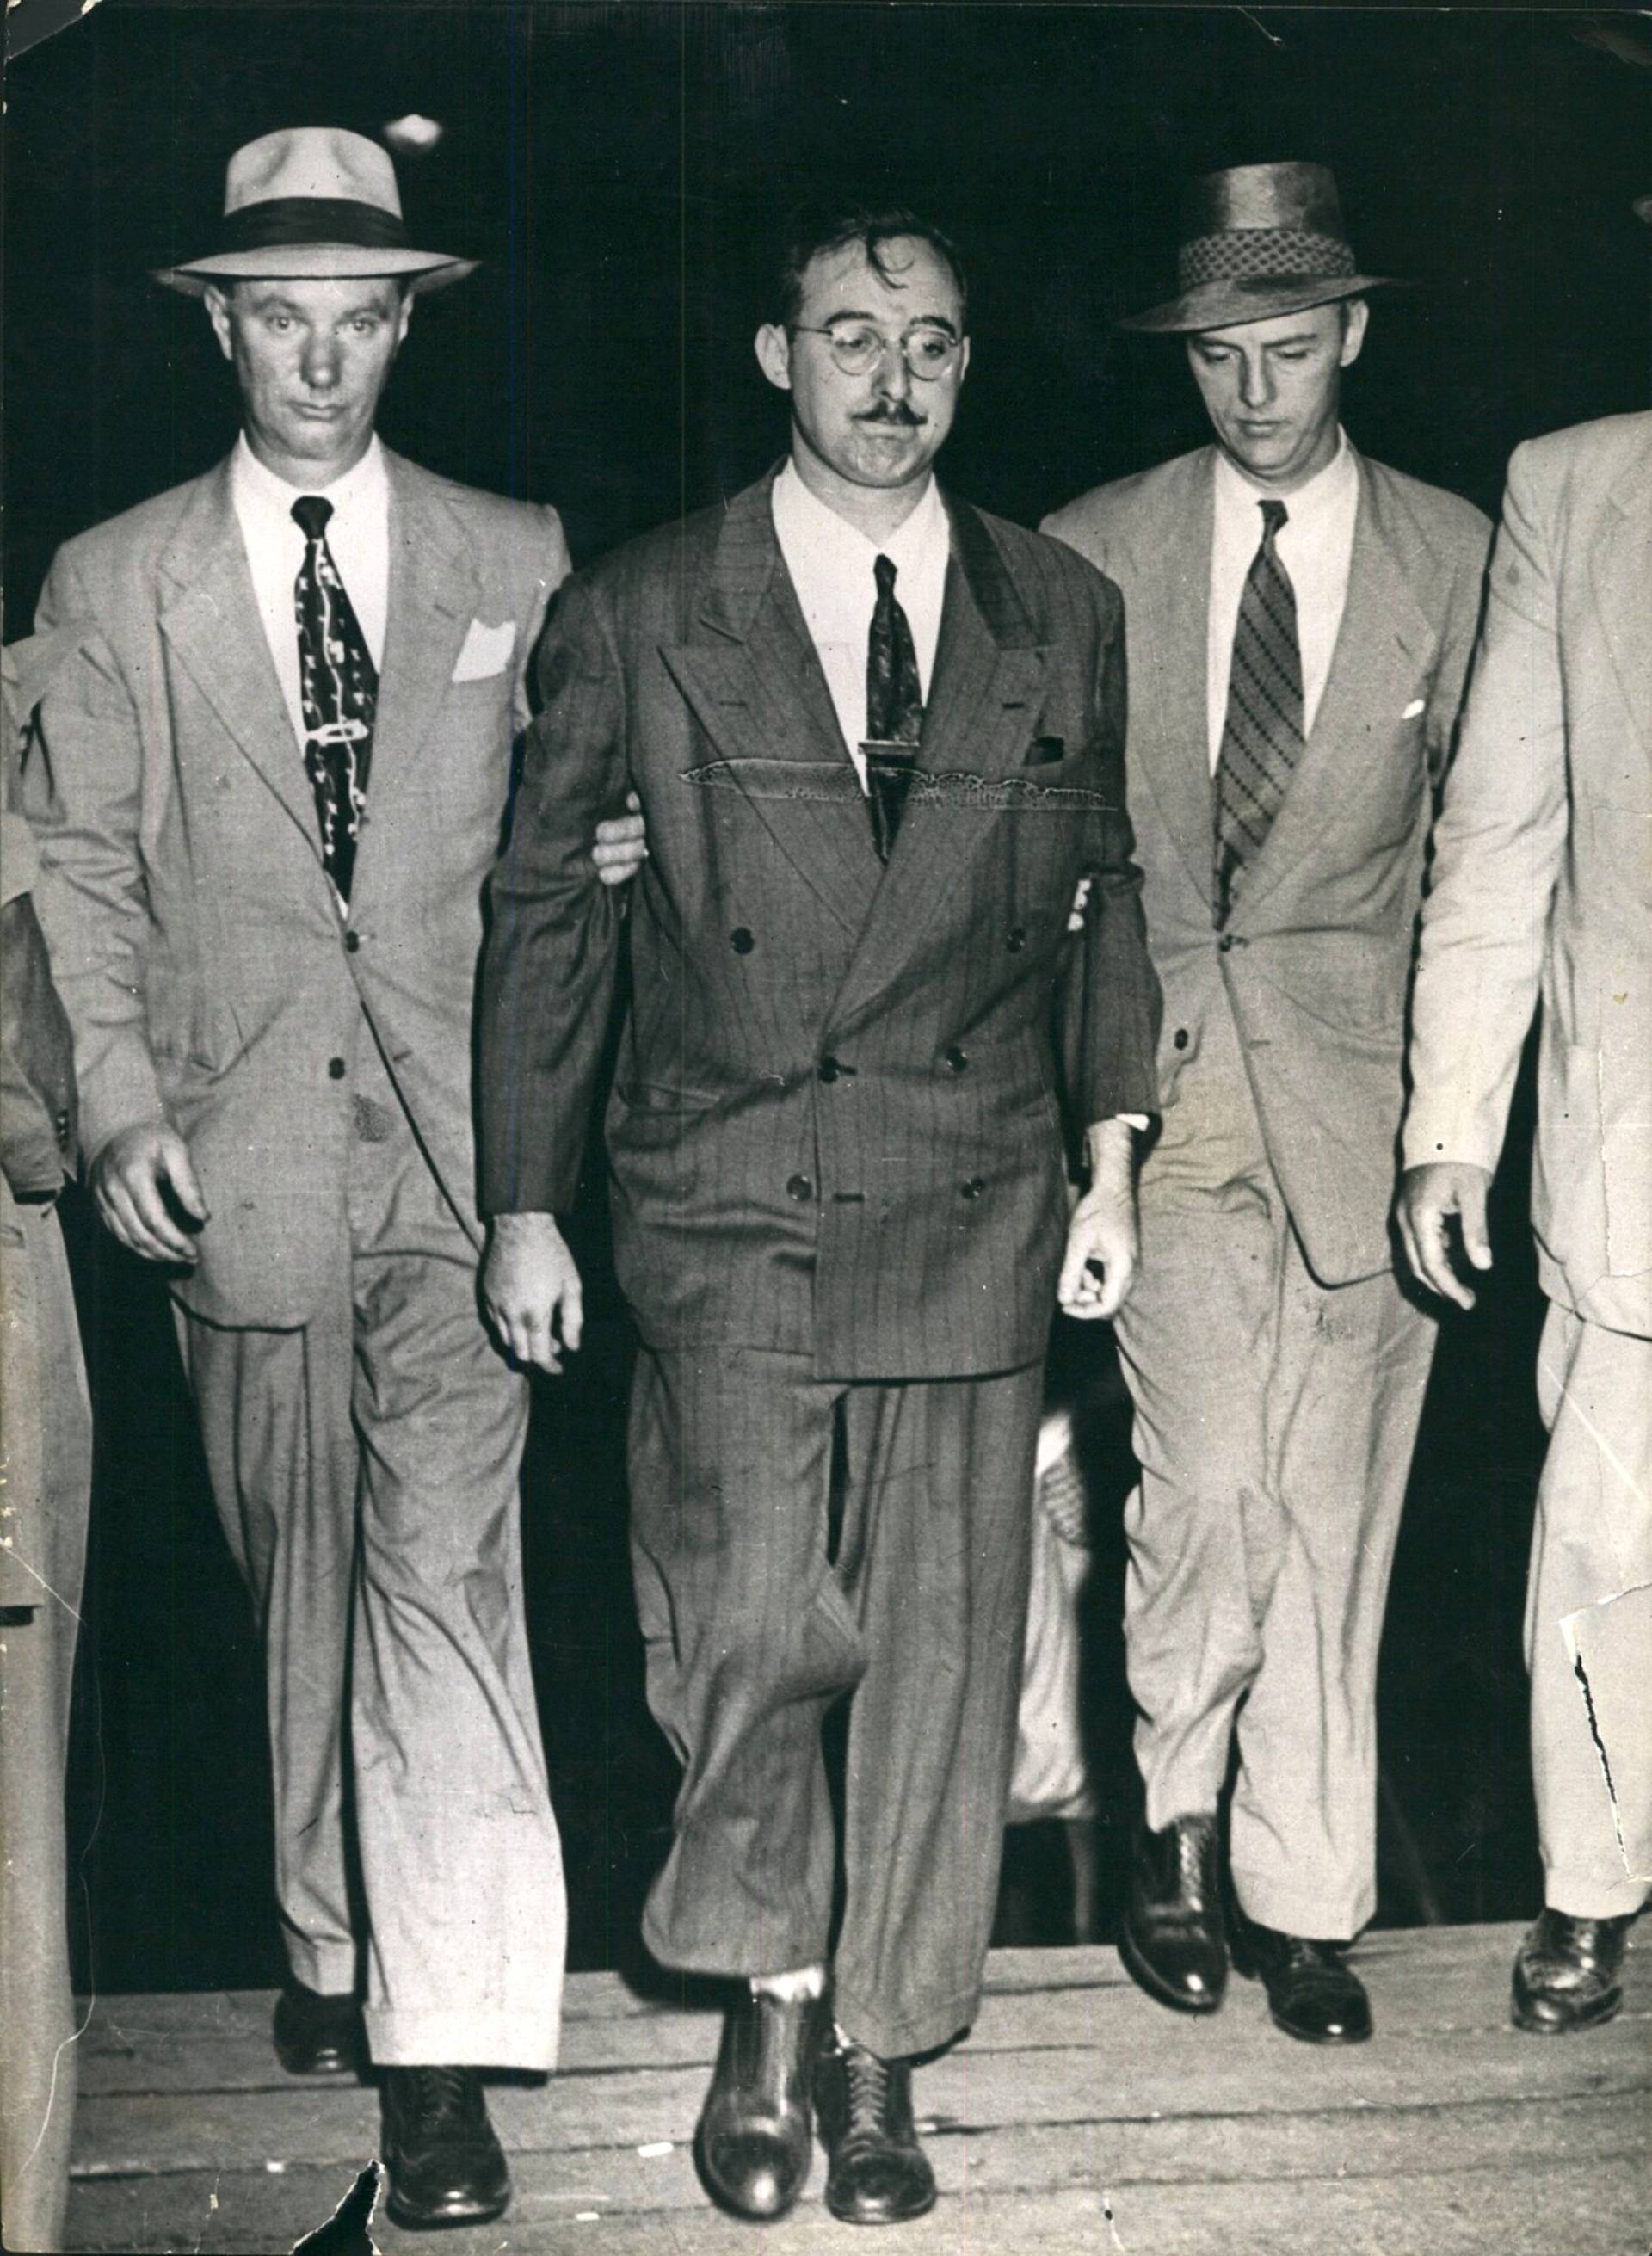 Julius Rosenberg pidätettiin 17. heinäkuuta 1950 Ruth ja David Greenglassin todistusten pohjalta. Hänen osallisuudestaan atomivakoiluun kiistellään yhä. 